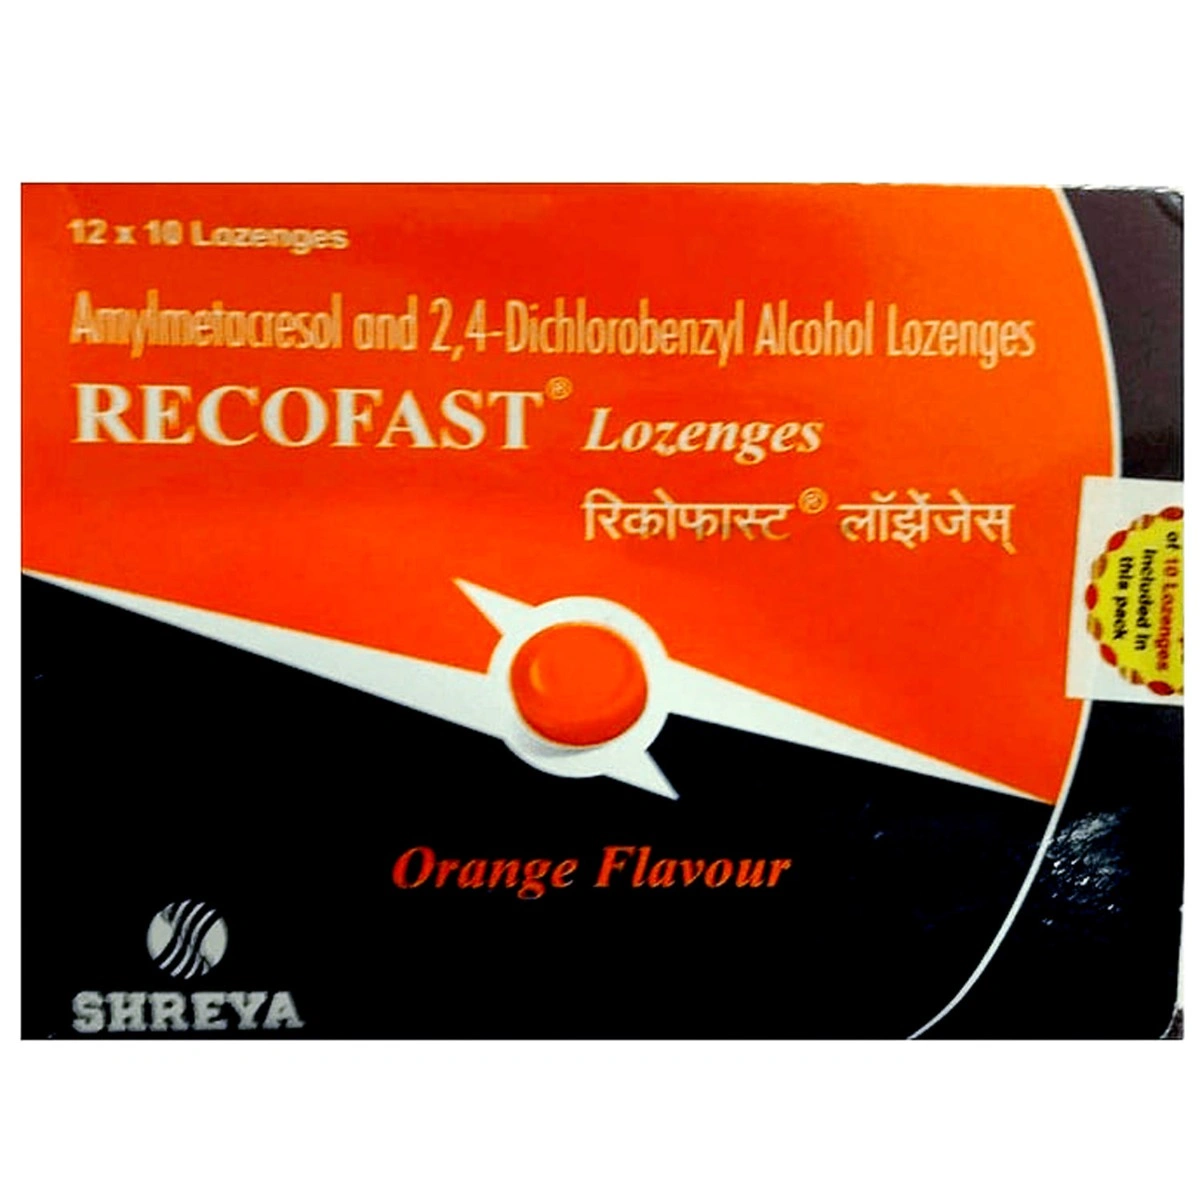 Recofast Lozenges Orange